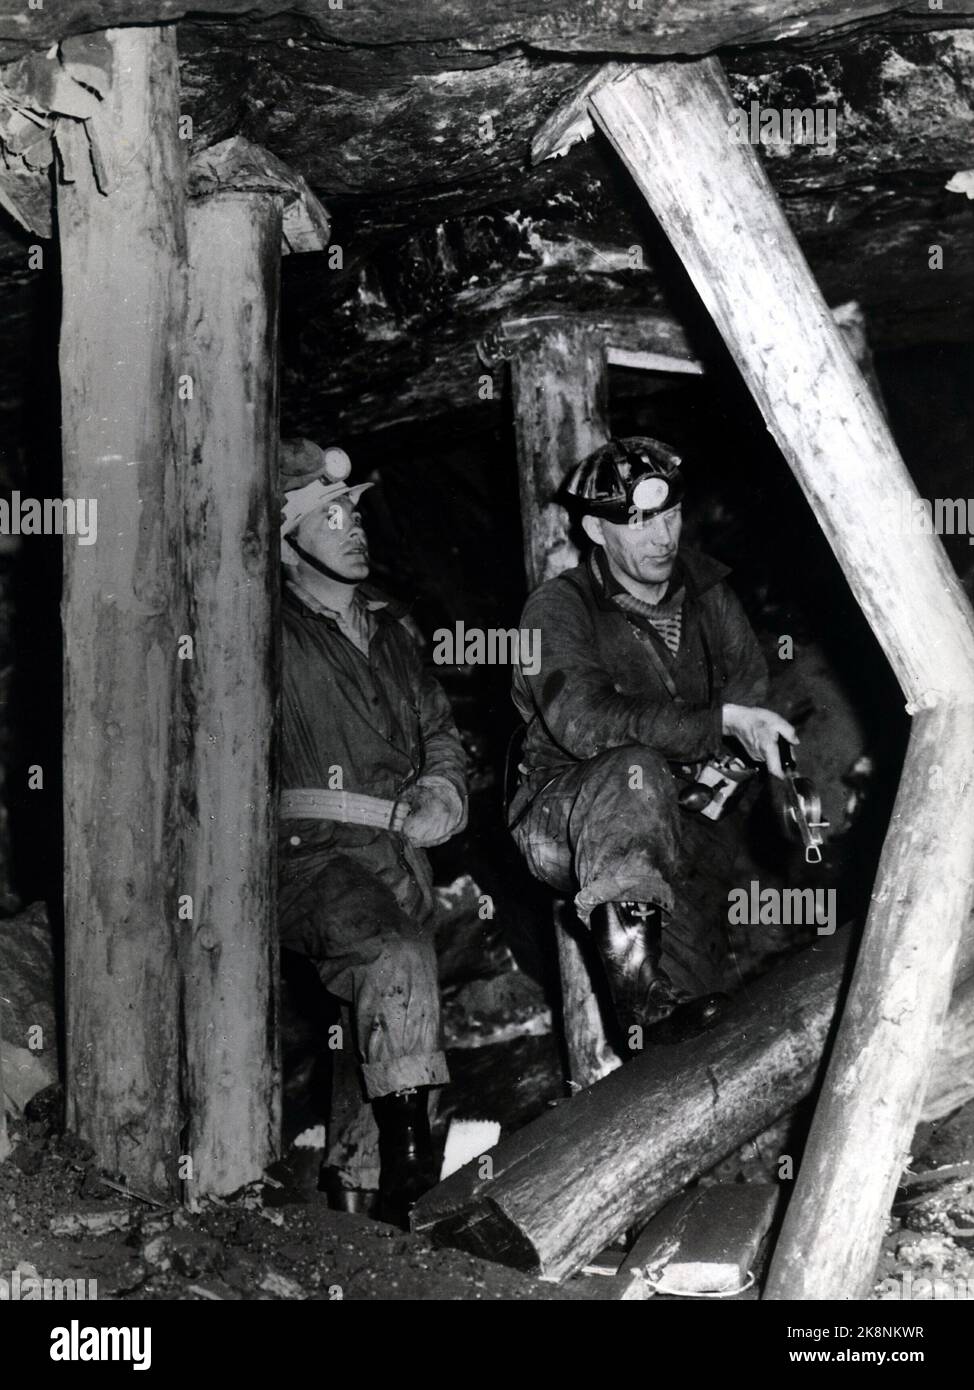 Ny Ålesund 1959. Foto fra 'King Bay -gruvene'  i Ny Ålesund der den fjerde alvorlige eksplosjonsulykke i 'King Bay-gruvene' på Svalbard skjedde 5.november 1962. 21 mennesker omkom.Bildet viser gruvearbeidere i aksjon ved inngangen til disse gruvene.  (De tre foregående eksplosjonsulykker i King Bay var i 1948, 1952 og 1953 med henholdsvis 15, ni  og 16 omkomne). Det ble påny avslørt store mangler og misligheter, og saken endte med mistillit i Stortinget og industriminister Kjell Holler måtte gå. Stortinget besluttet så avvikling av 'King Bay' 23.aug. 1963, og samtidig  måtte regjeringen Gerhar Stock Photo